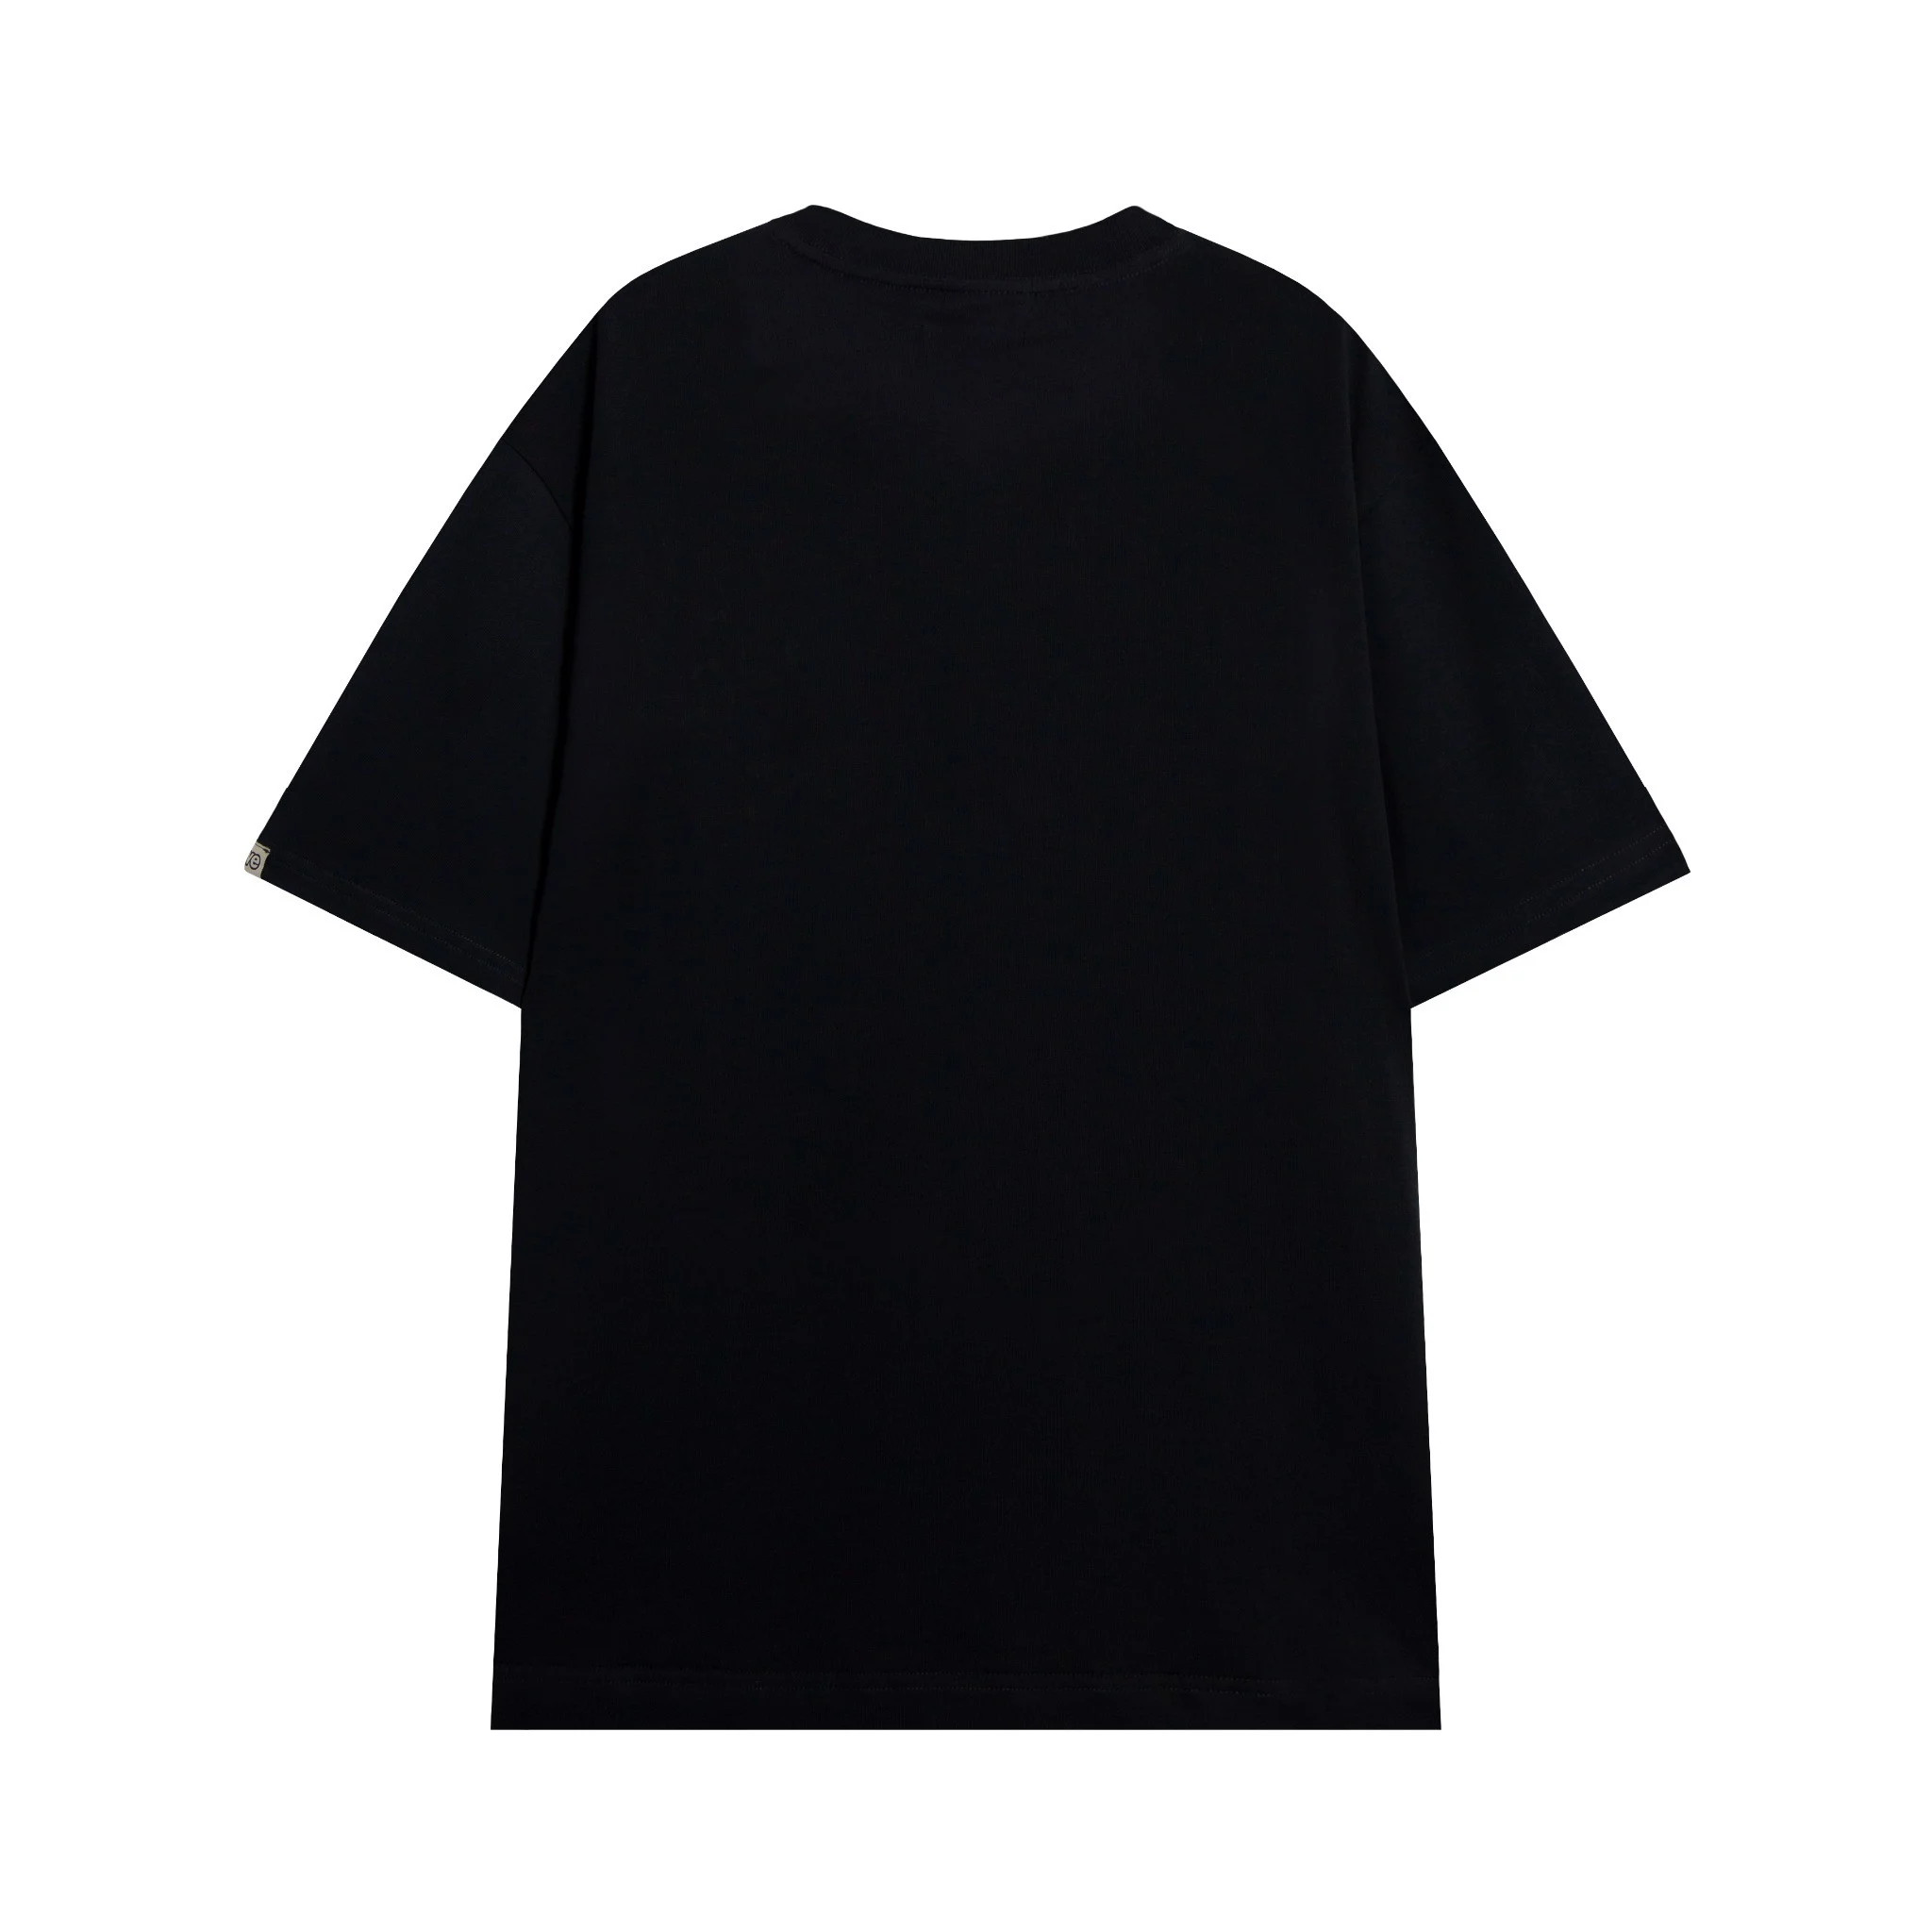 Áo thun SWE EYE TEE màu đen vải cotton dày mịn co dãn tốt full tag AL249